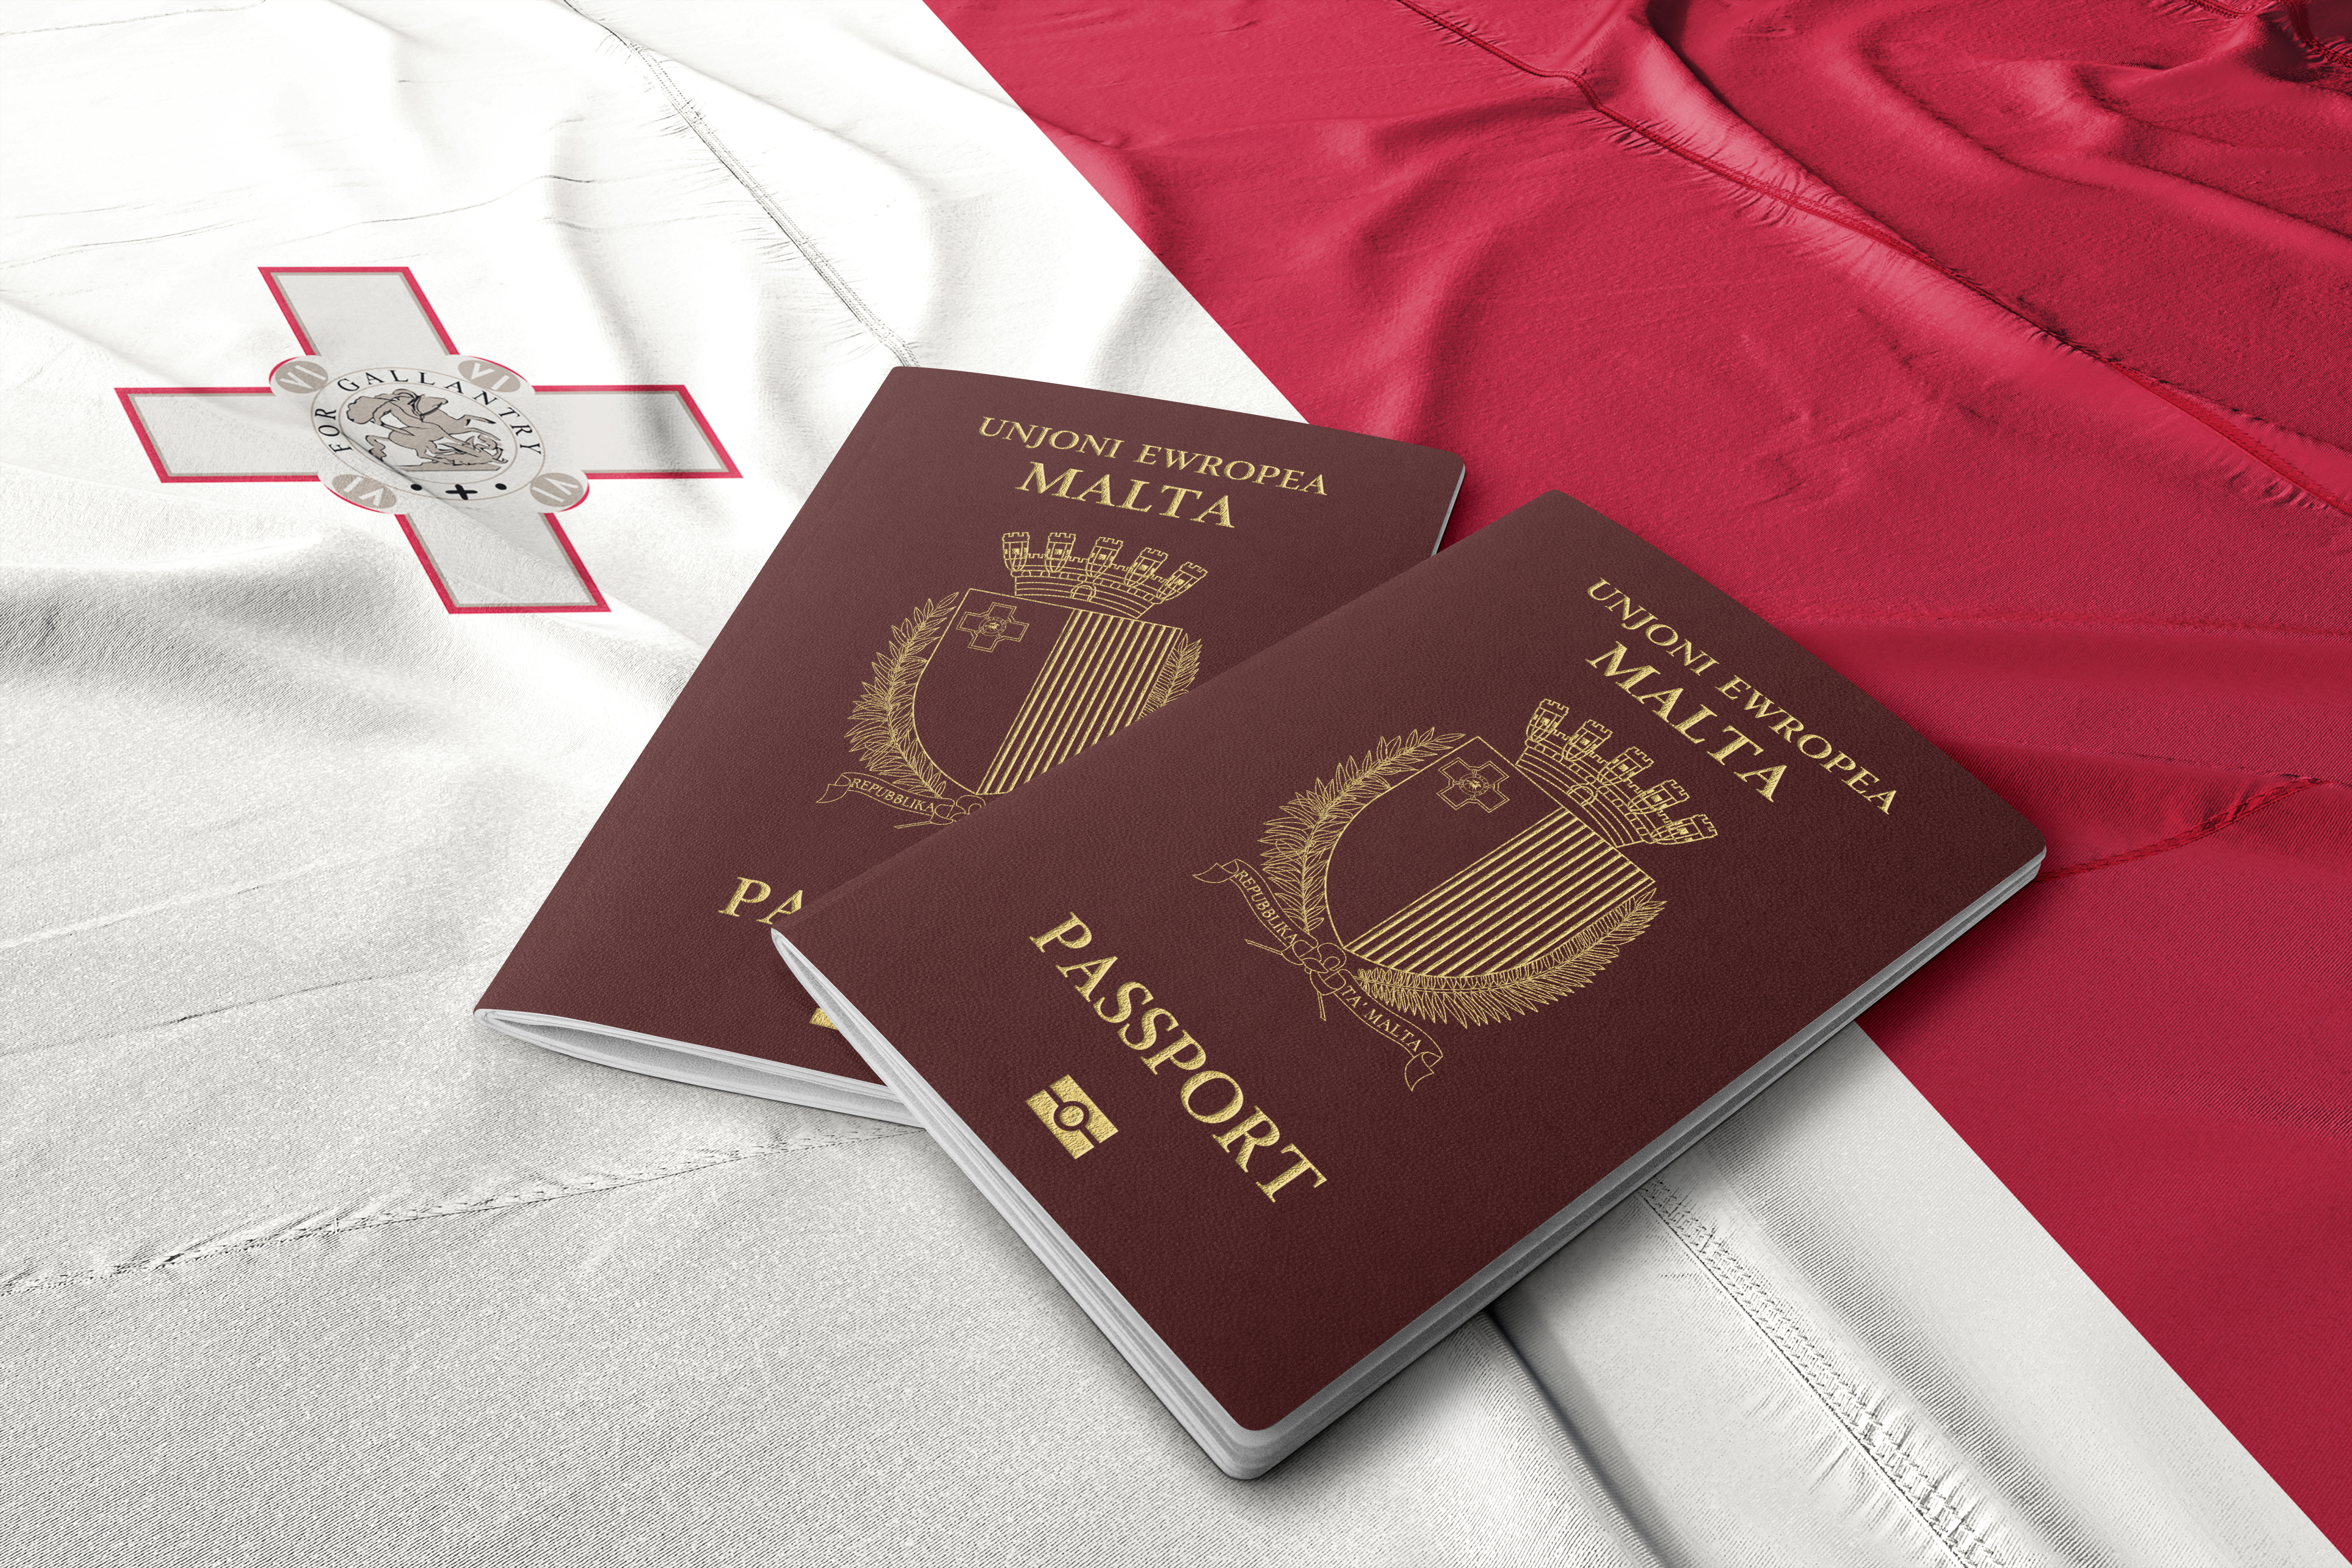 Флаг и паспорта Мальты, гражданство которой могут получить иностранцы